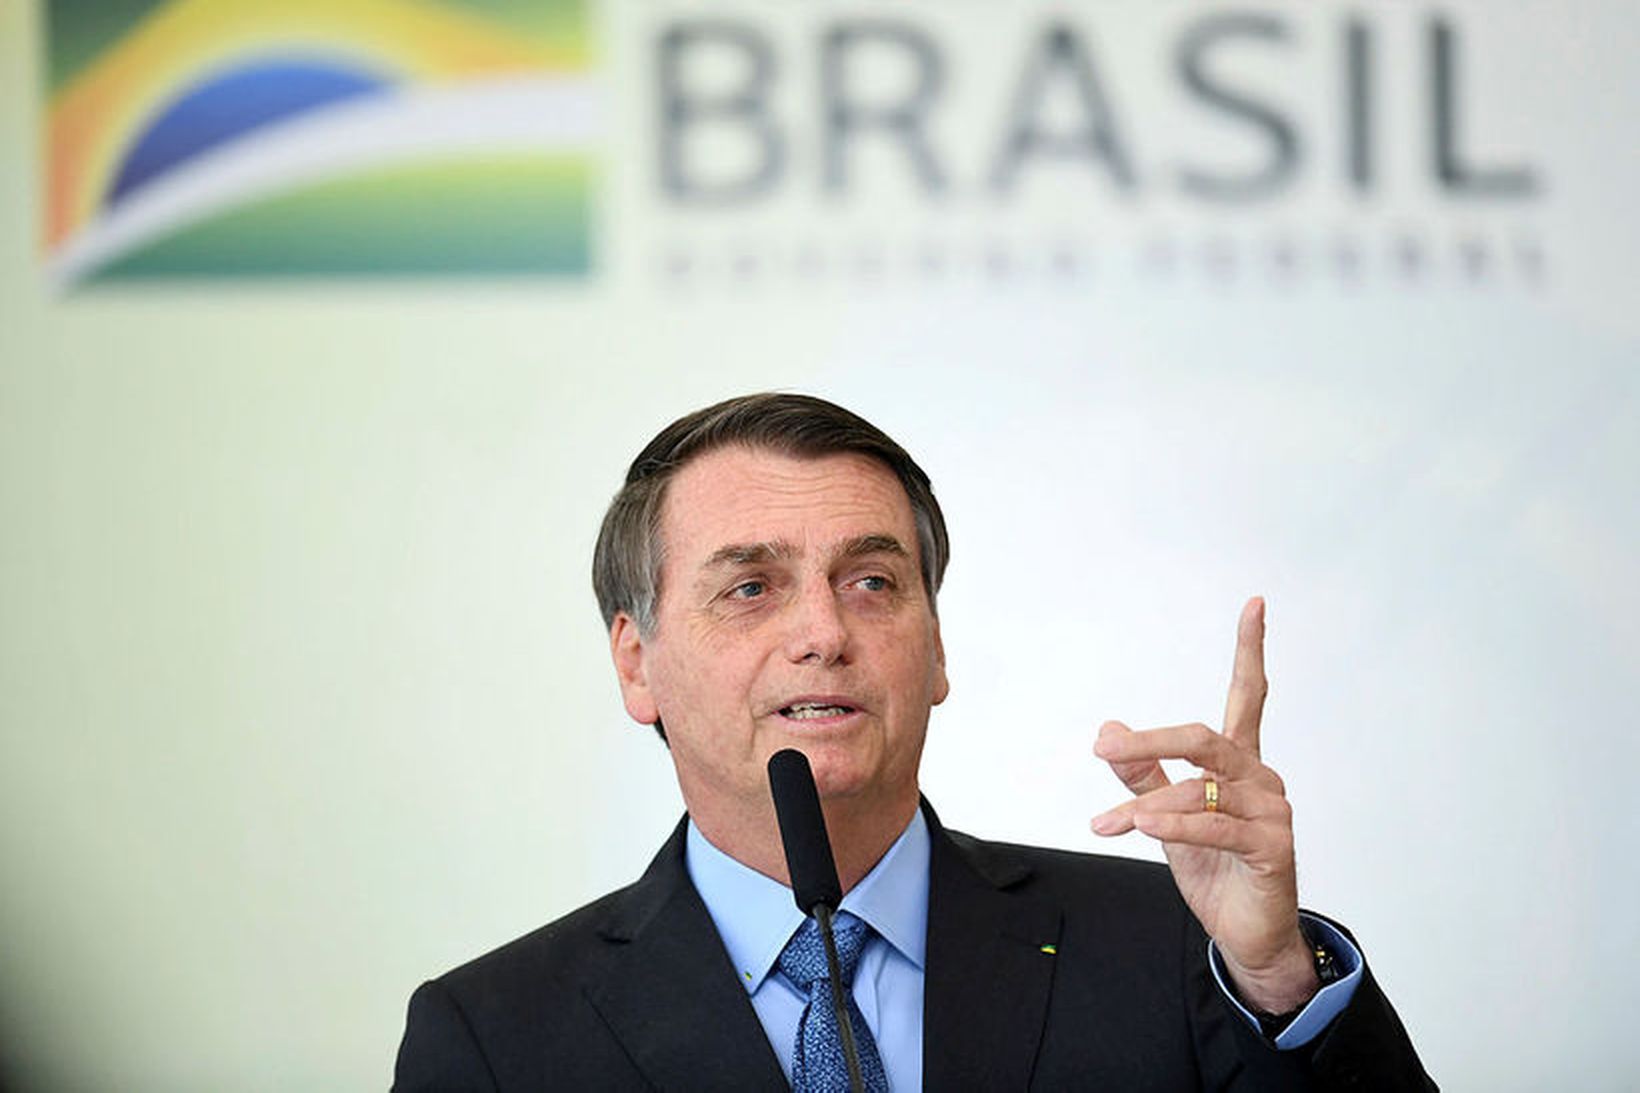 Jair Bolsonaro, forseti Brasilíu, segir stjórnvöld ekki ráða við ástandið.